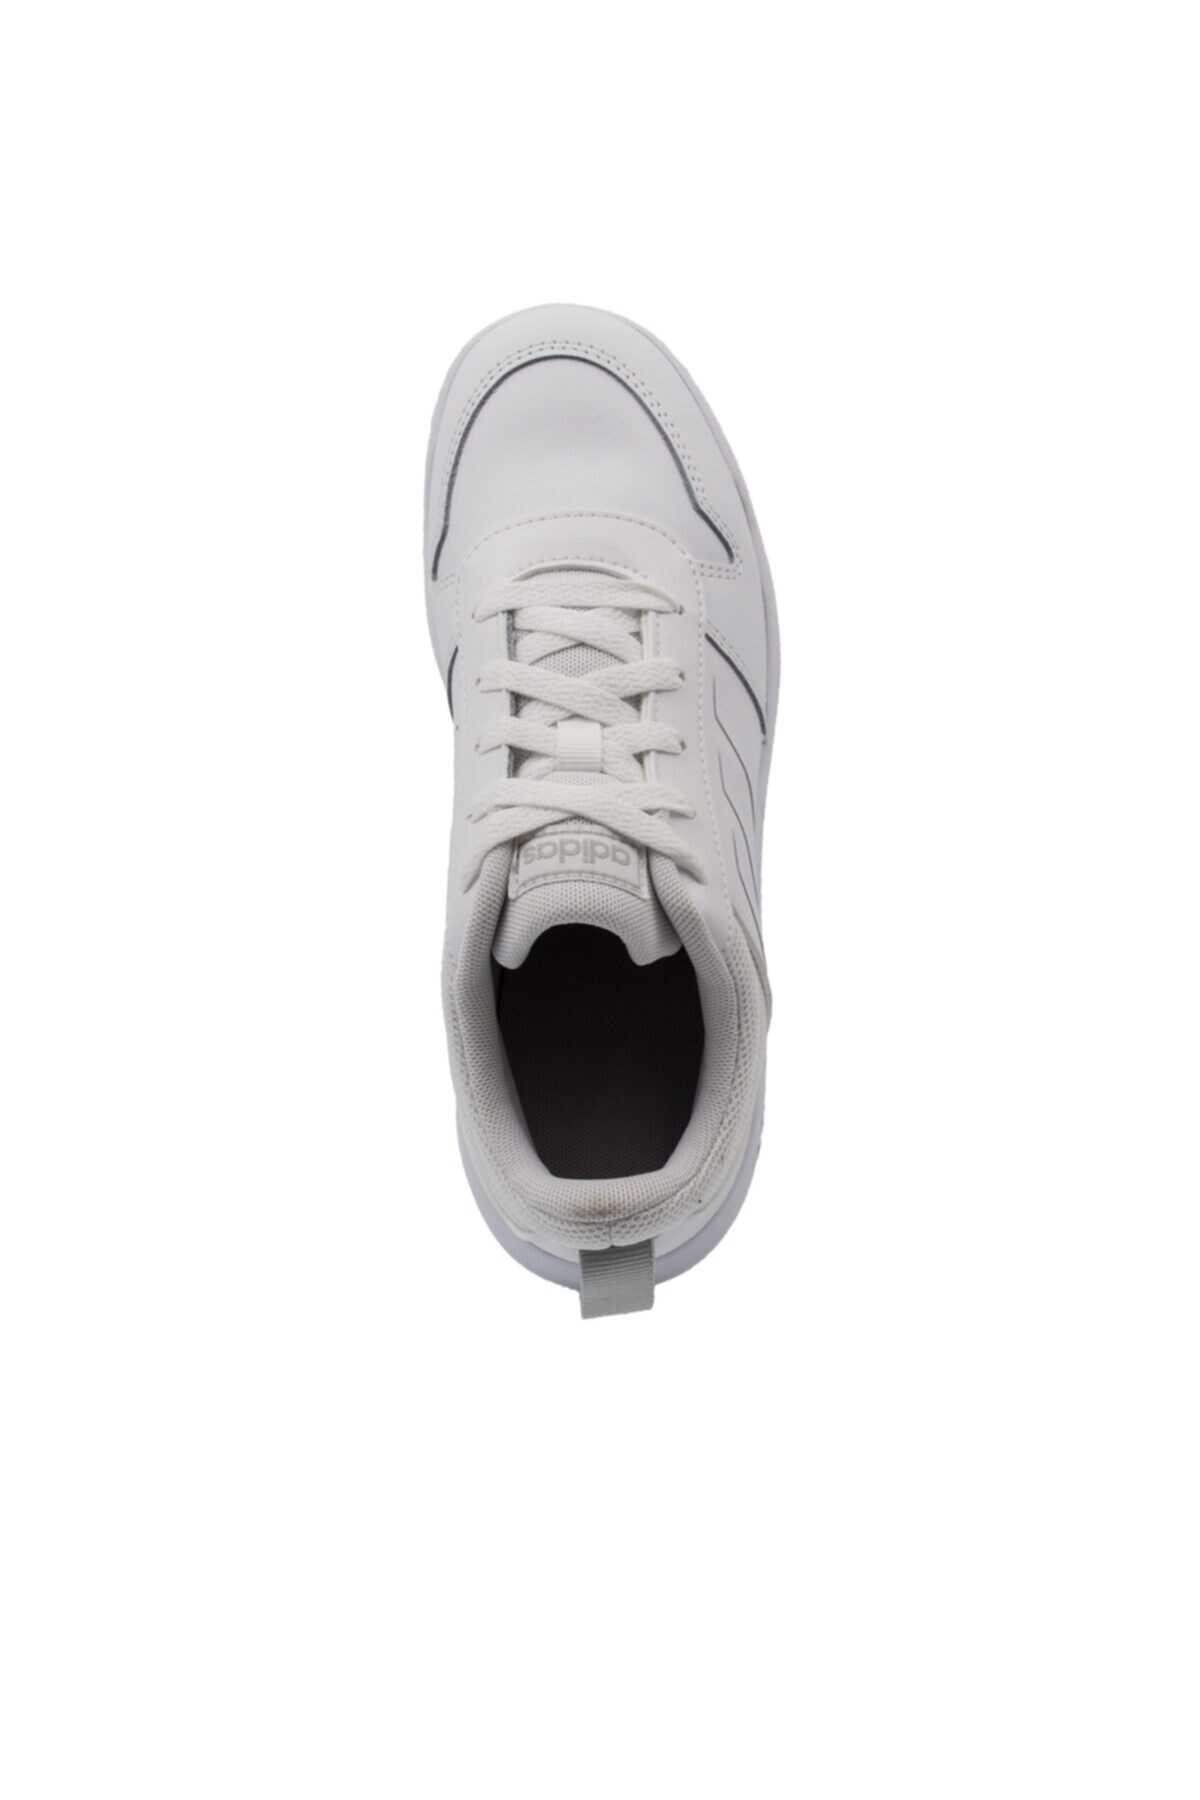 کفش ورزشی یونیسکس سفید مدل EG2554 برند adidas 